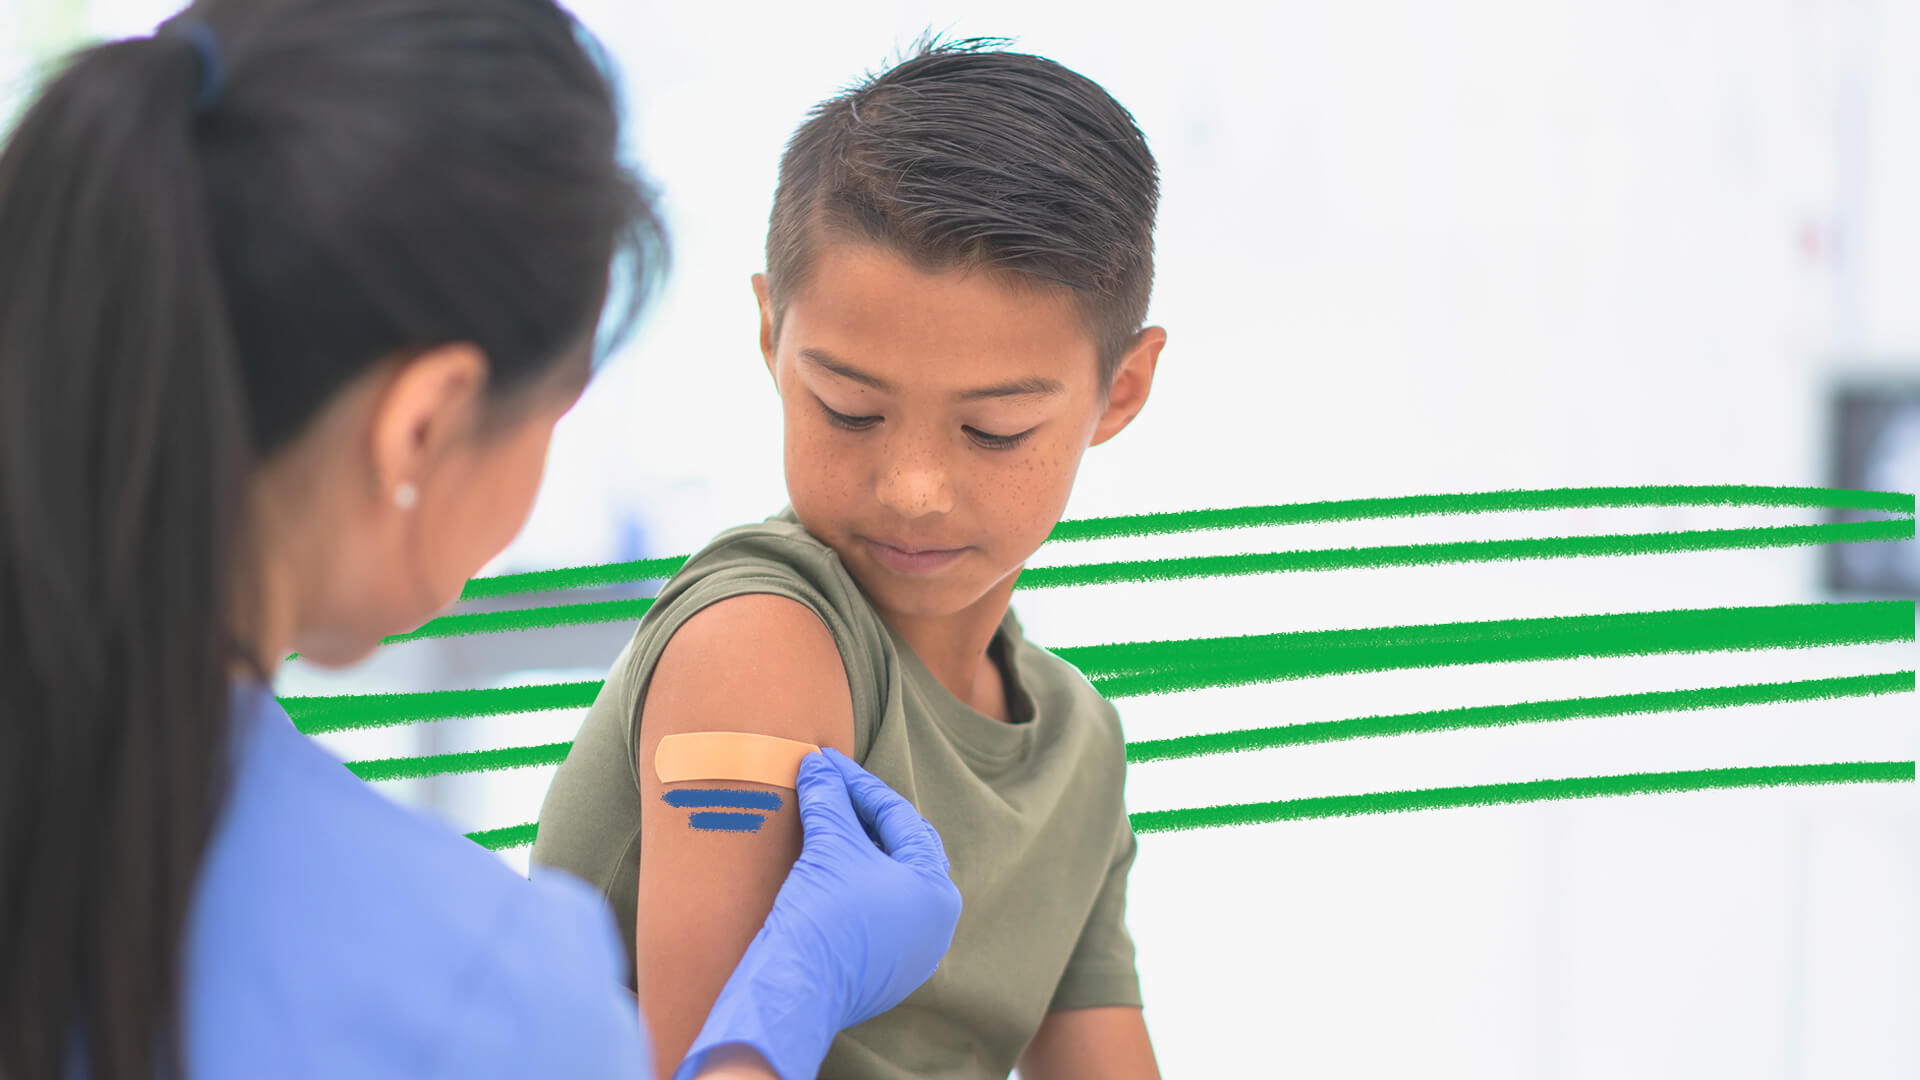 Foto de um menino recebendo um curativo no braço por uma enfermeira. A matéria traz dados atualizados da vacina contra covid-19 entre as crianças para questionar o fim da pandemia